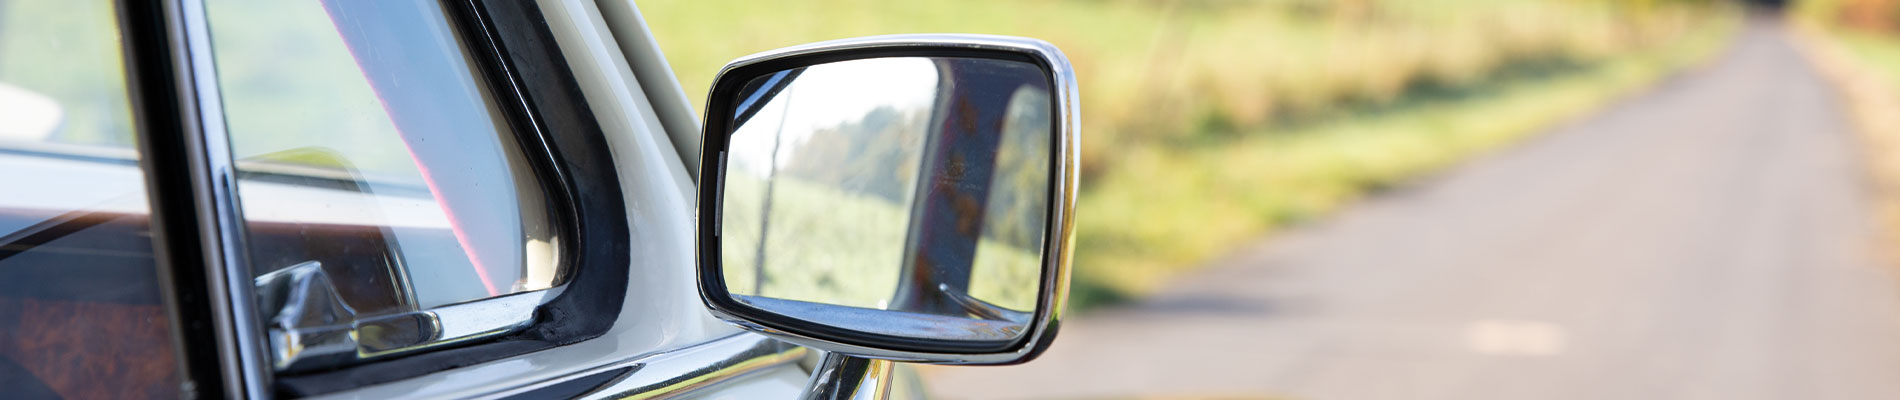 2x Oldtimer Kfz Außenspiegel Türspiegel Seitenspiegel Auto Spiegel Universal